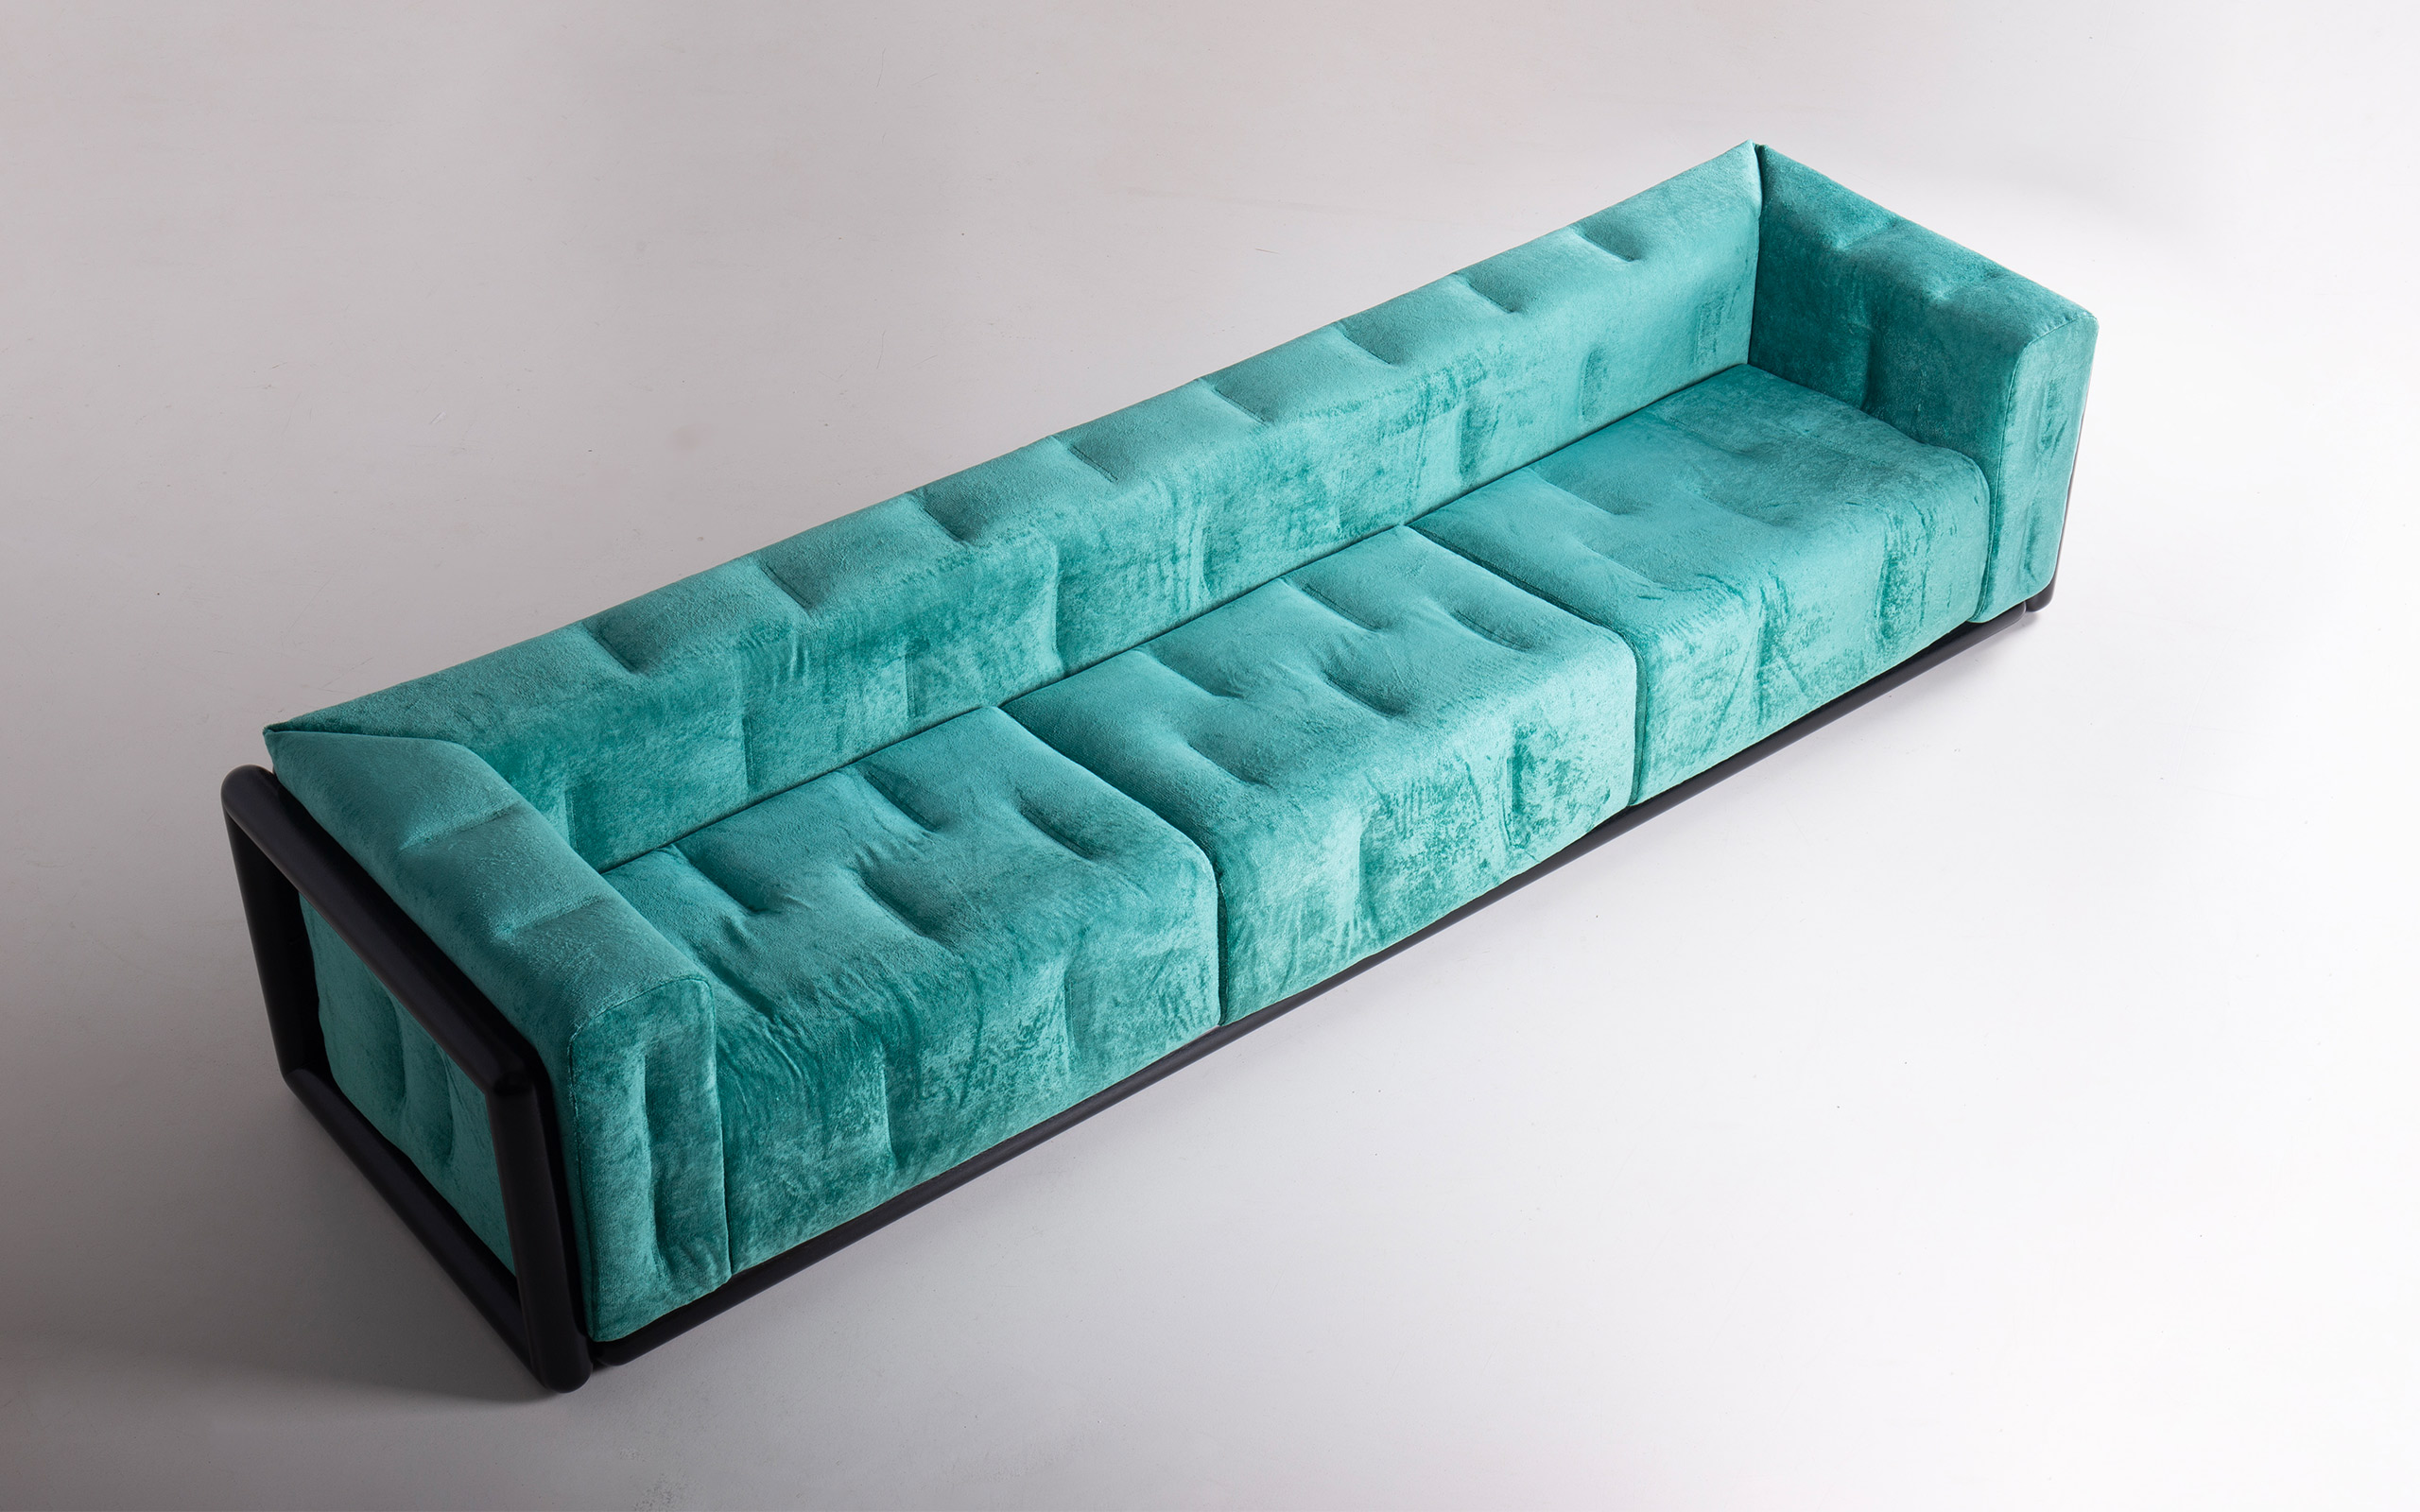 Cornaro 300 sofa by Carlo Scarpa | Paradisoterrestre